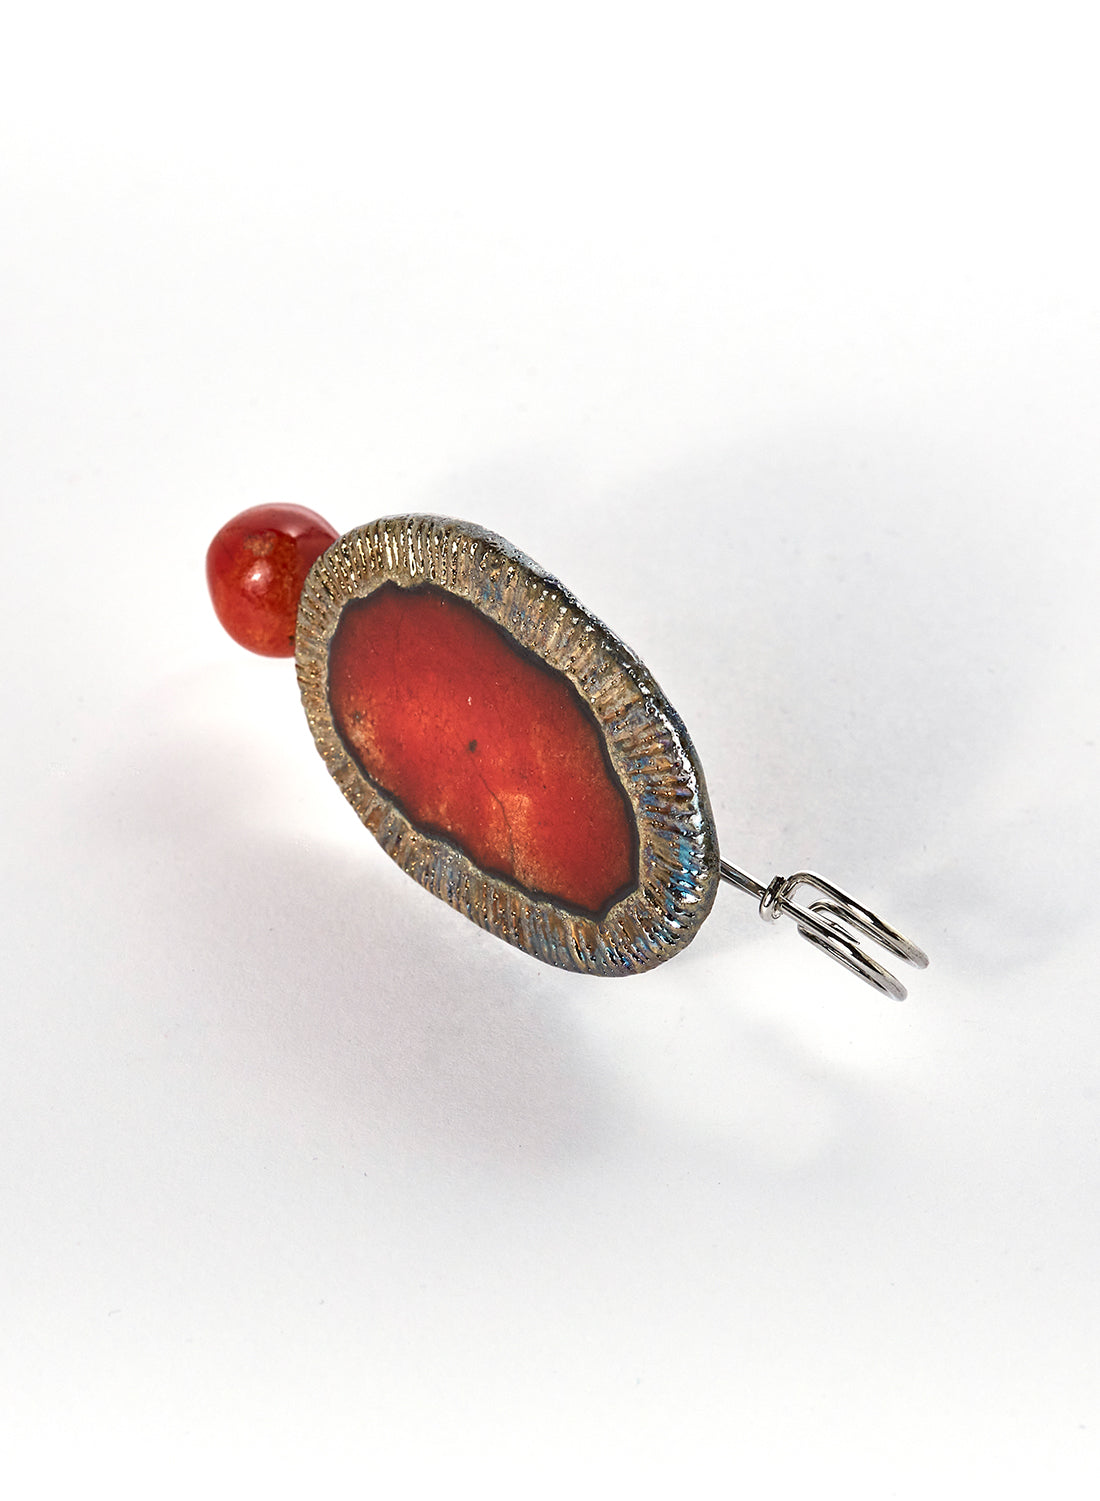 Spilla Red Solar con accessorio gioiello fatto a mano in ceramica Raku di forma ovale con perlina rossa